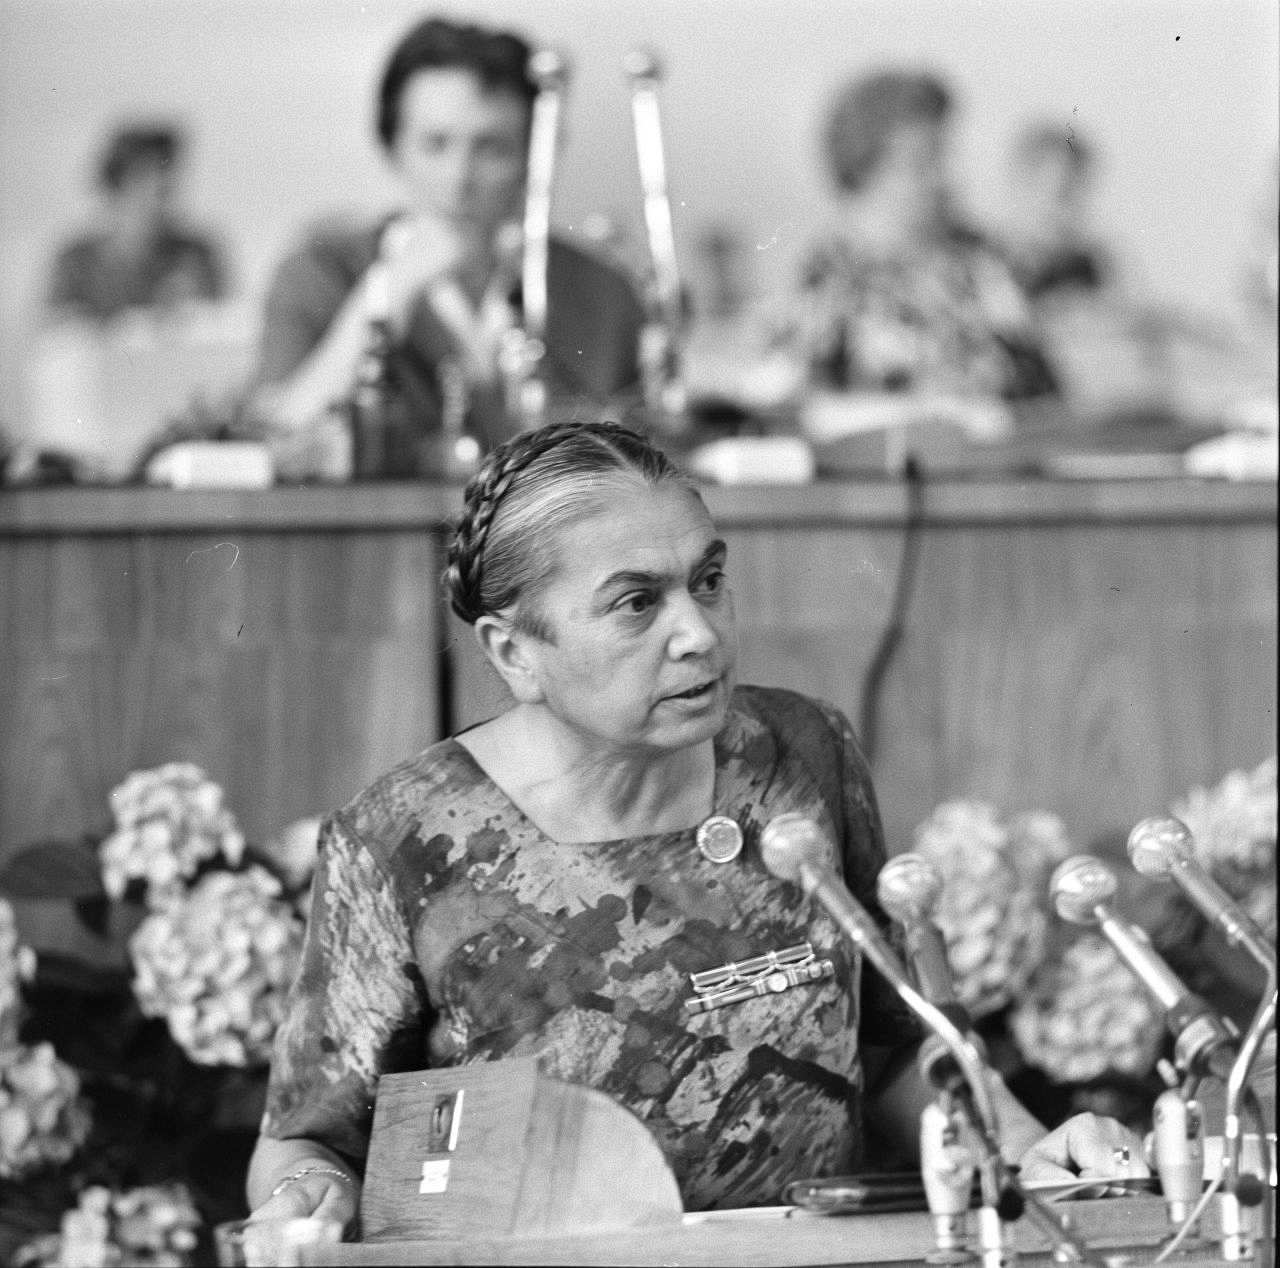 Frauenkongress der DDR 1964, Dynamo-Sporthalle Berlin. Hilde Benjamin, Ministerin für Justiz der DDR, hält eine Rede.